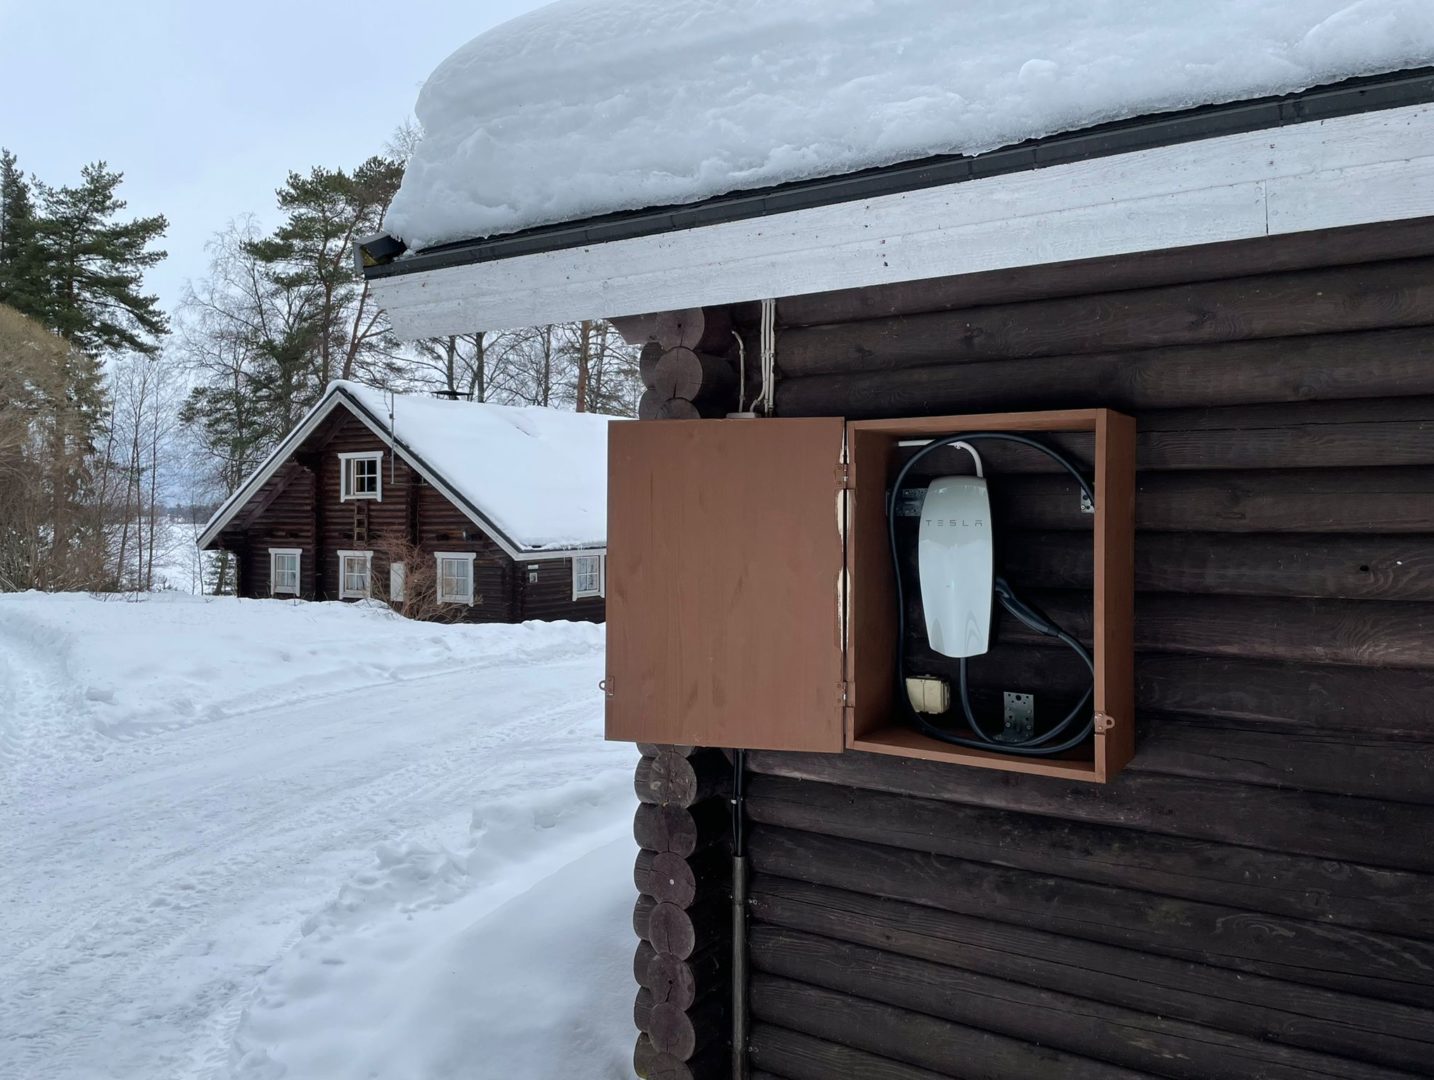 Leppäniemen Hirsihuviloilla Hauholla, puolen tunnin ajomatkan päässä Hämeenlinnasta on Karhunluola ja Oravanpesä mökin kanssa yhteiskäytössä sähkö- ja hybridiautojen latausasema. Maksullinen.